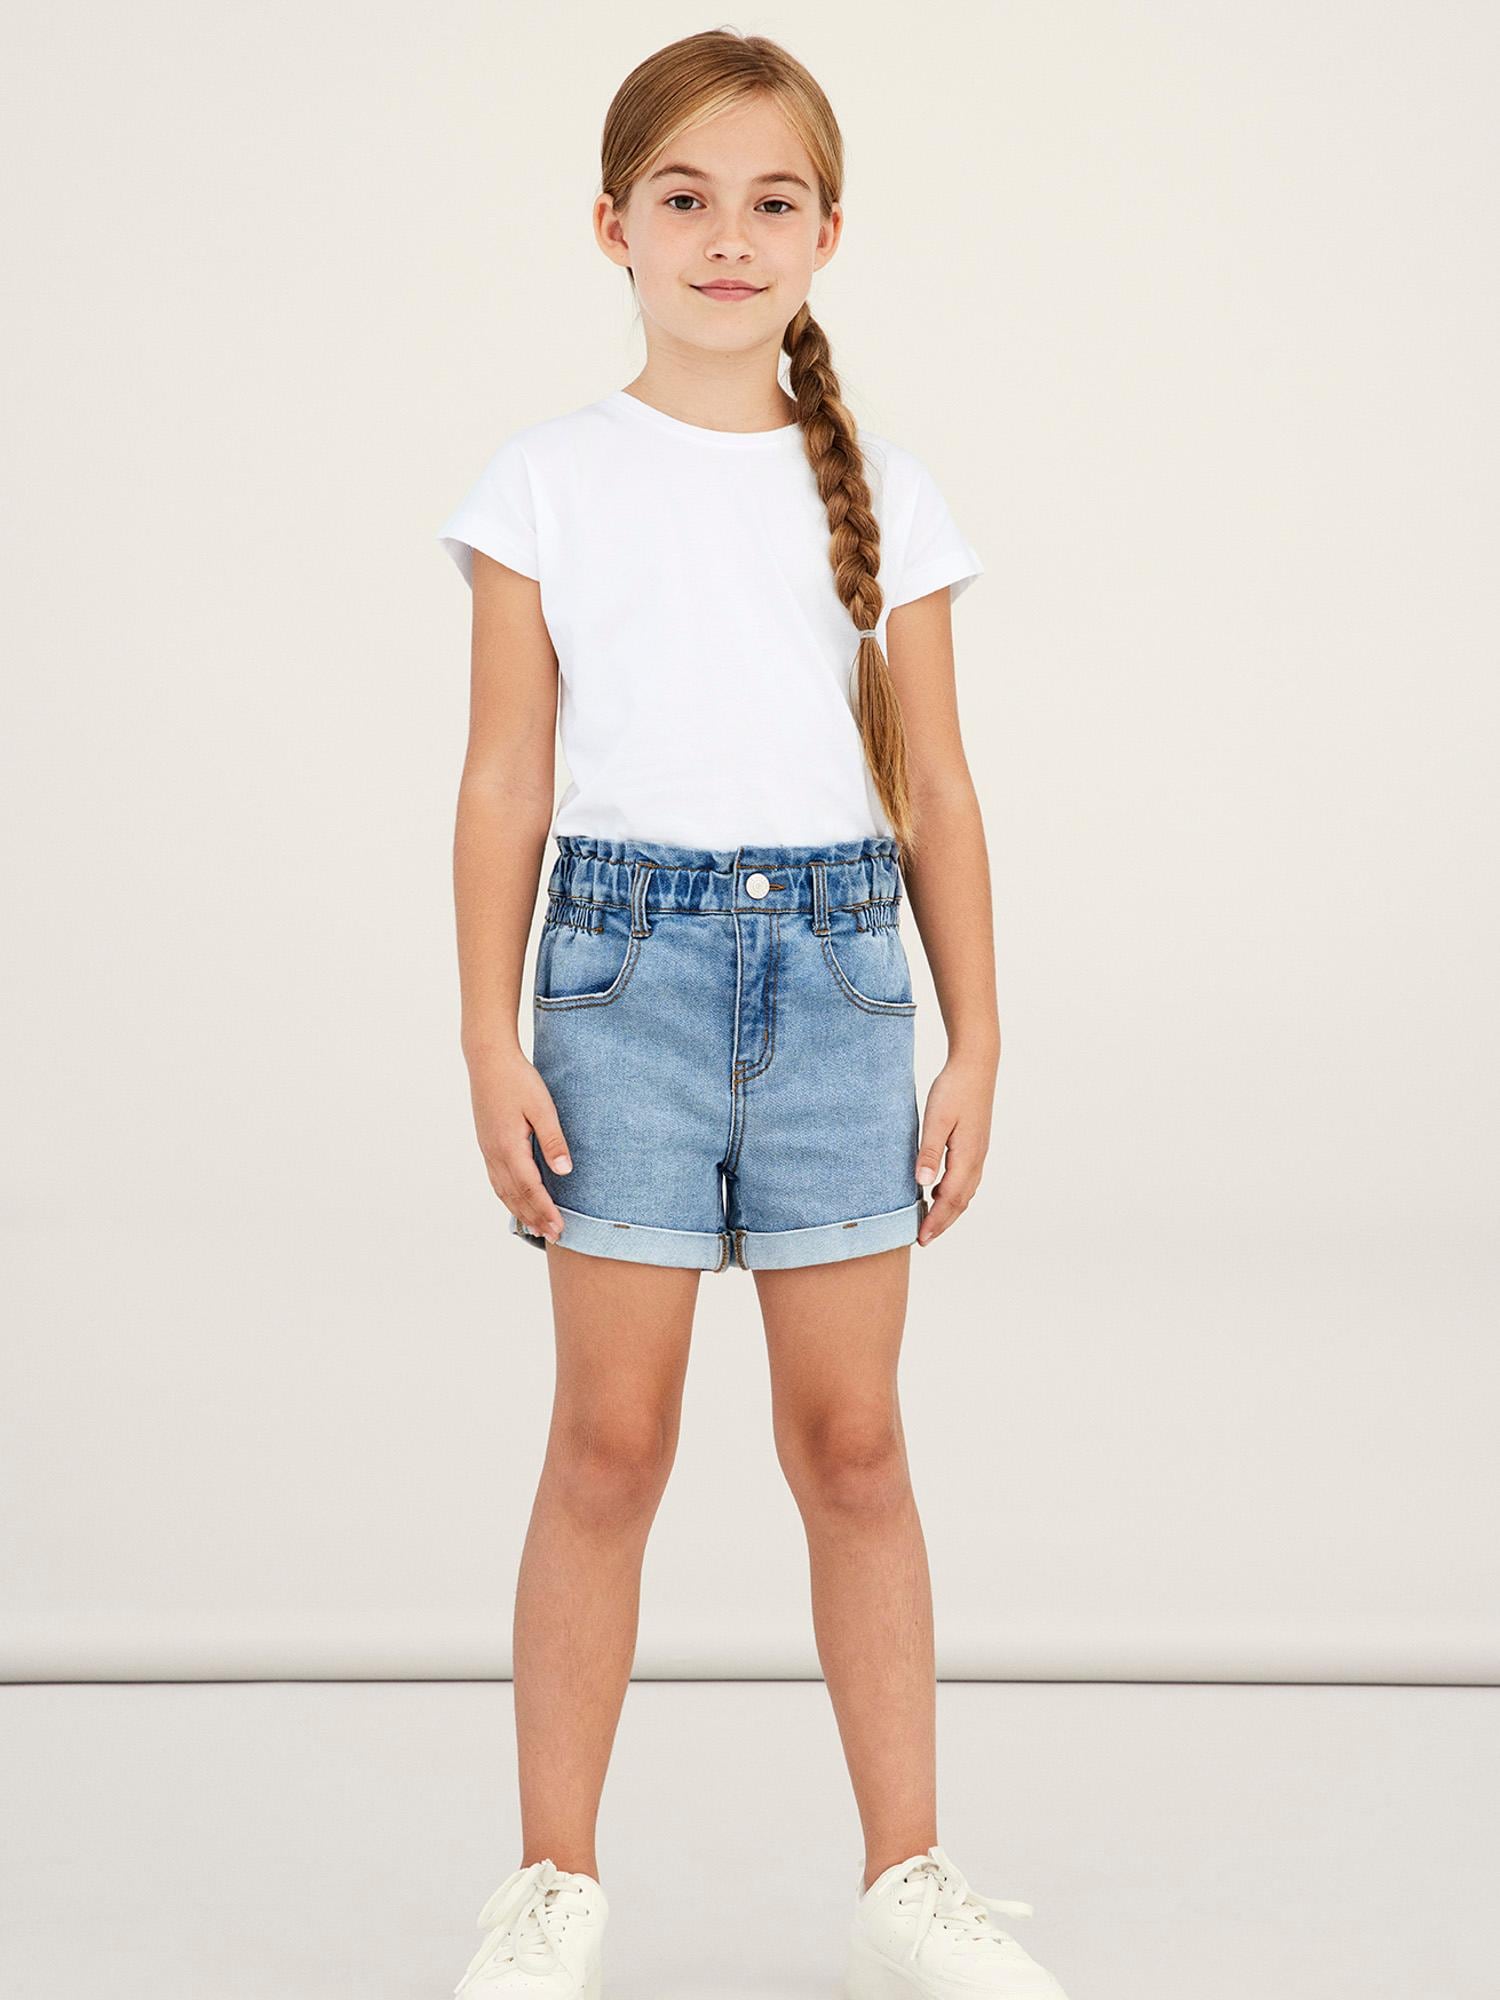 Jeans-Shorts finden Online OTTO im Mädchen Shop online